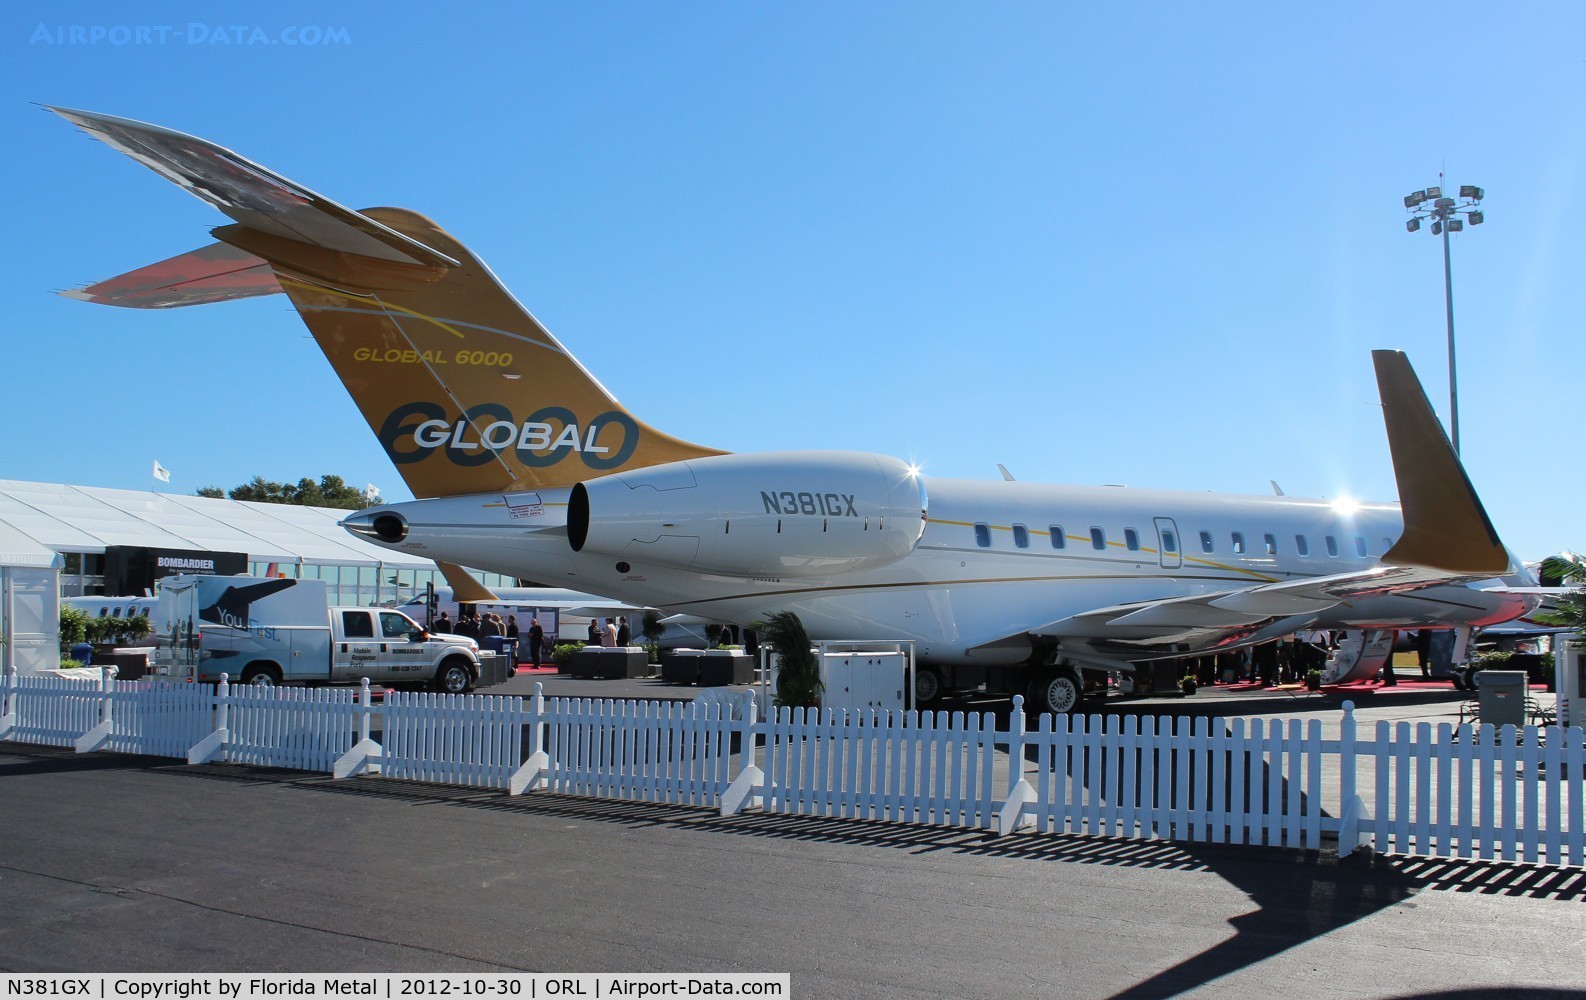 N381GX, 2012 Bombardier Global 6000 (BD-700-1A10) C/N 9381, Global 6000 at NBAA